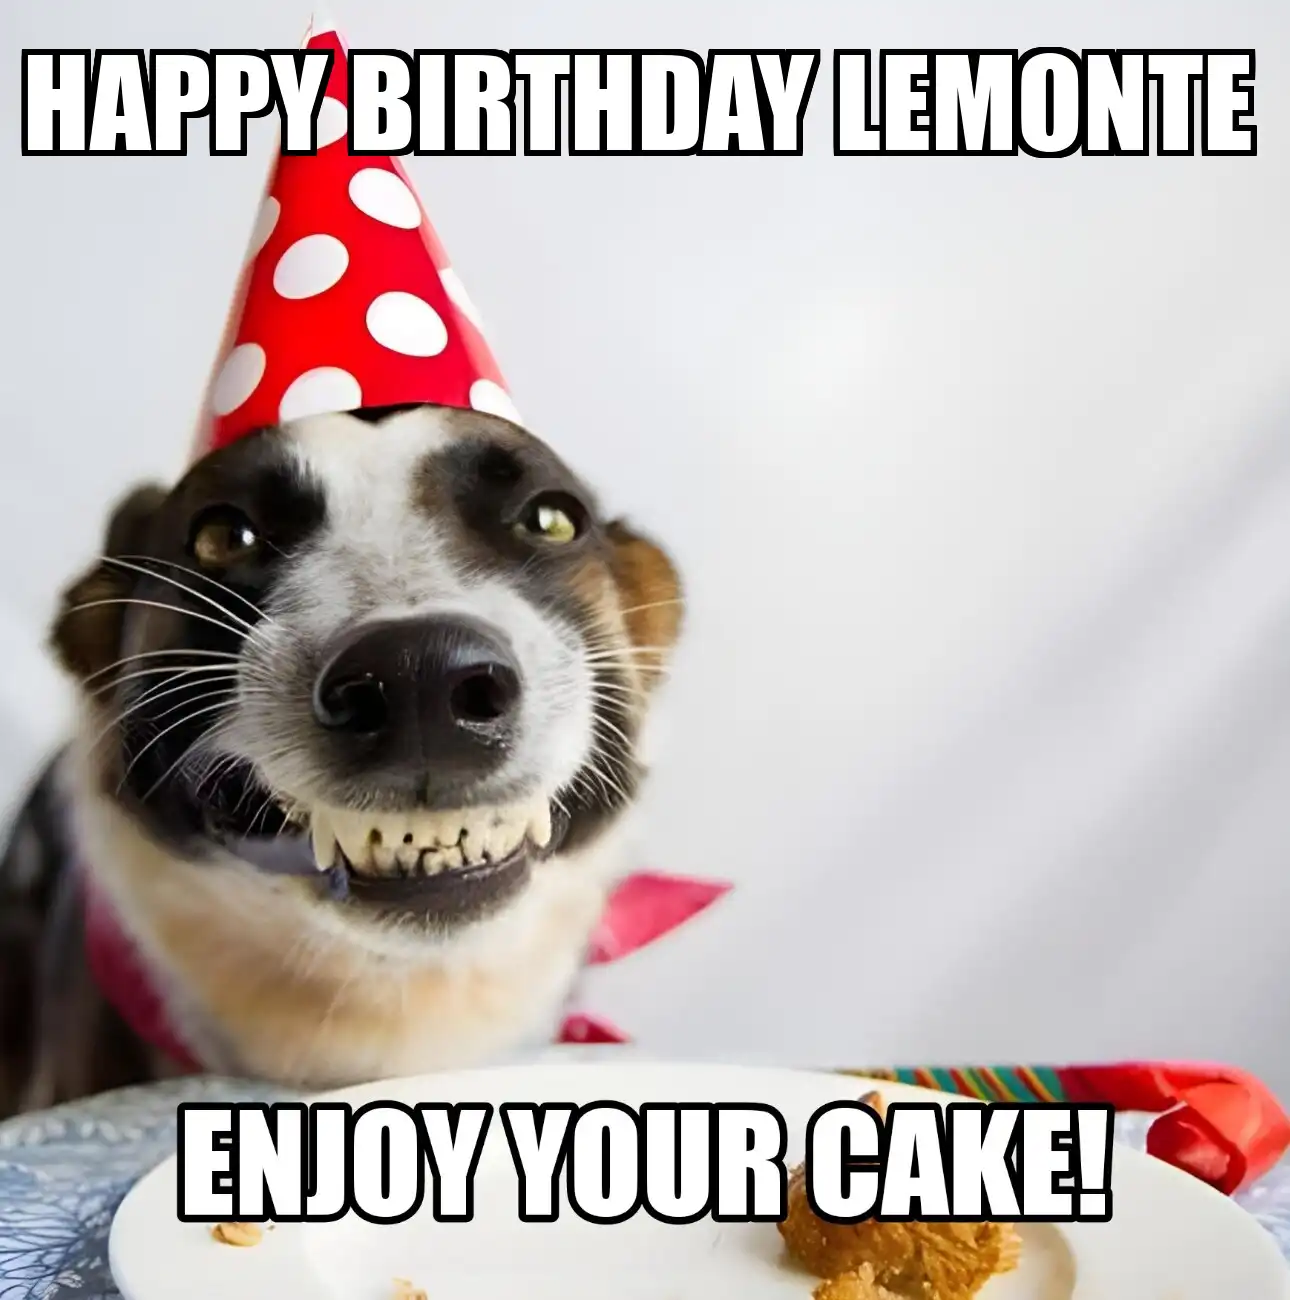 Happy Birthday Lemonte Enjoy Your Cake Dog Meme